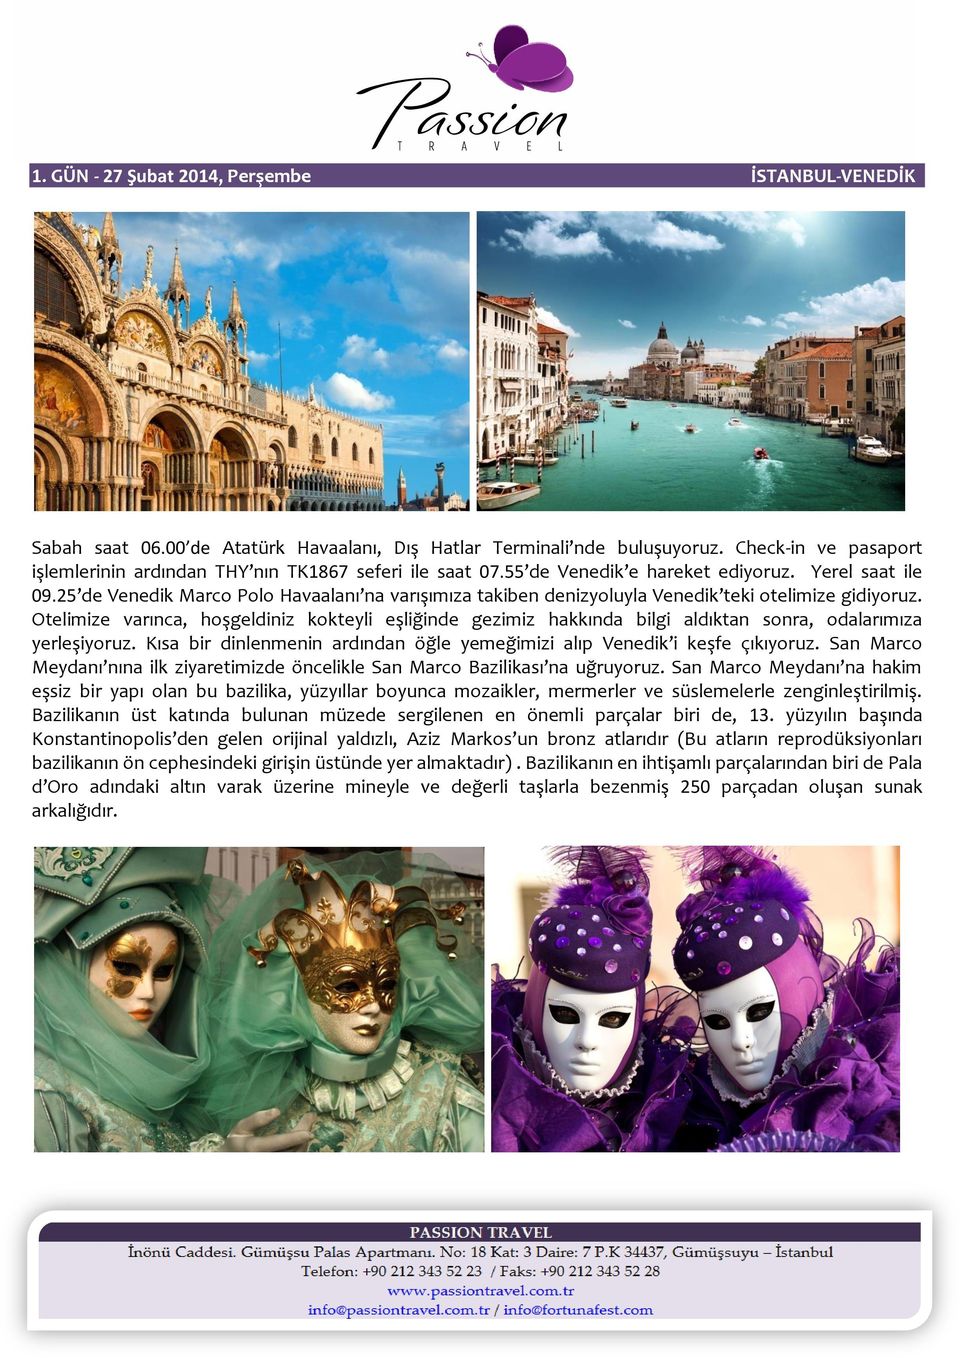 25 de Venedik Marco Polo Havaalanı na varışımıza takiben denizyoluyla Venedik teki otelimize gidiyoruz.